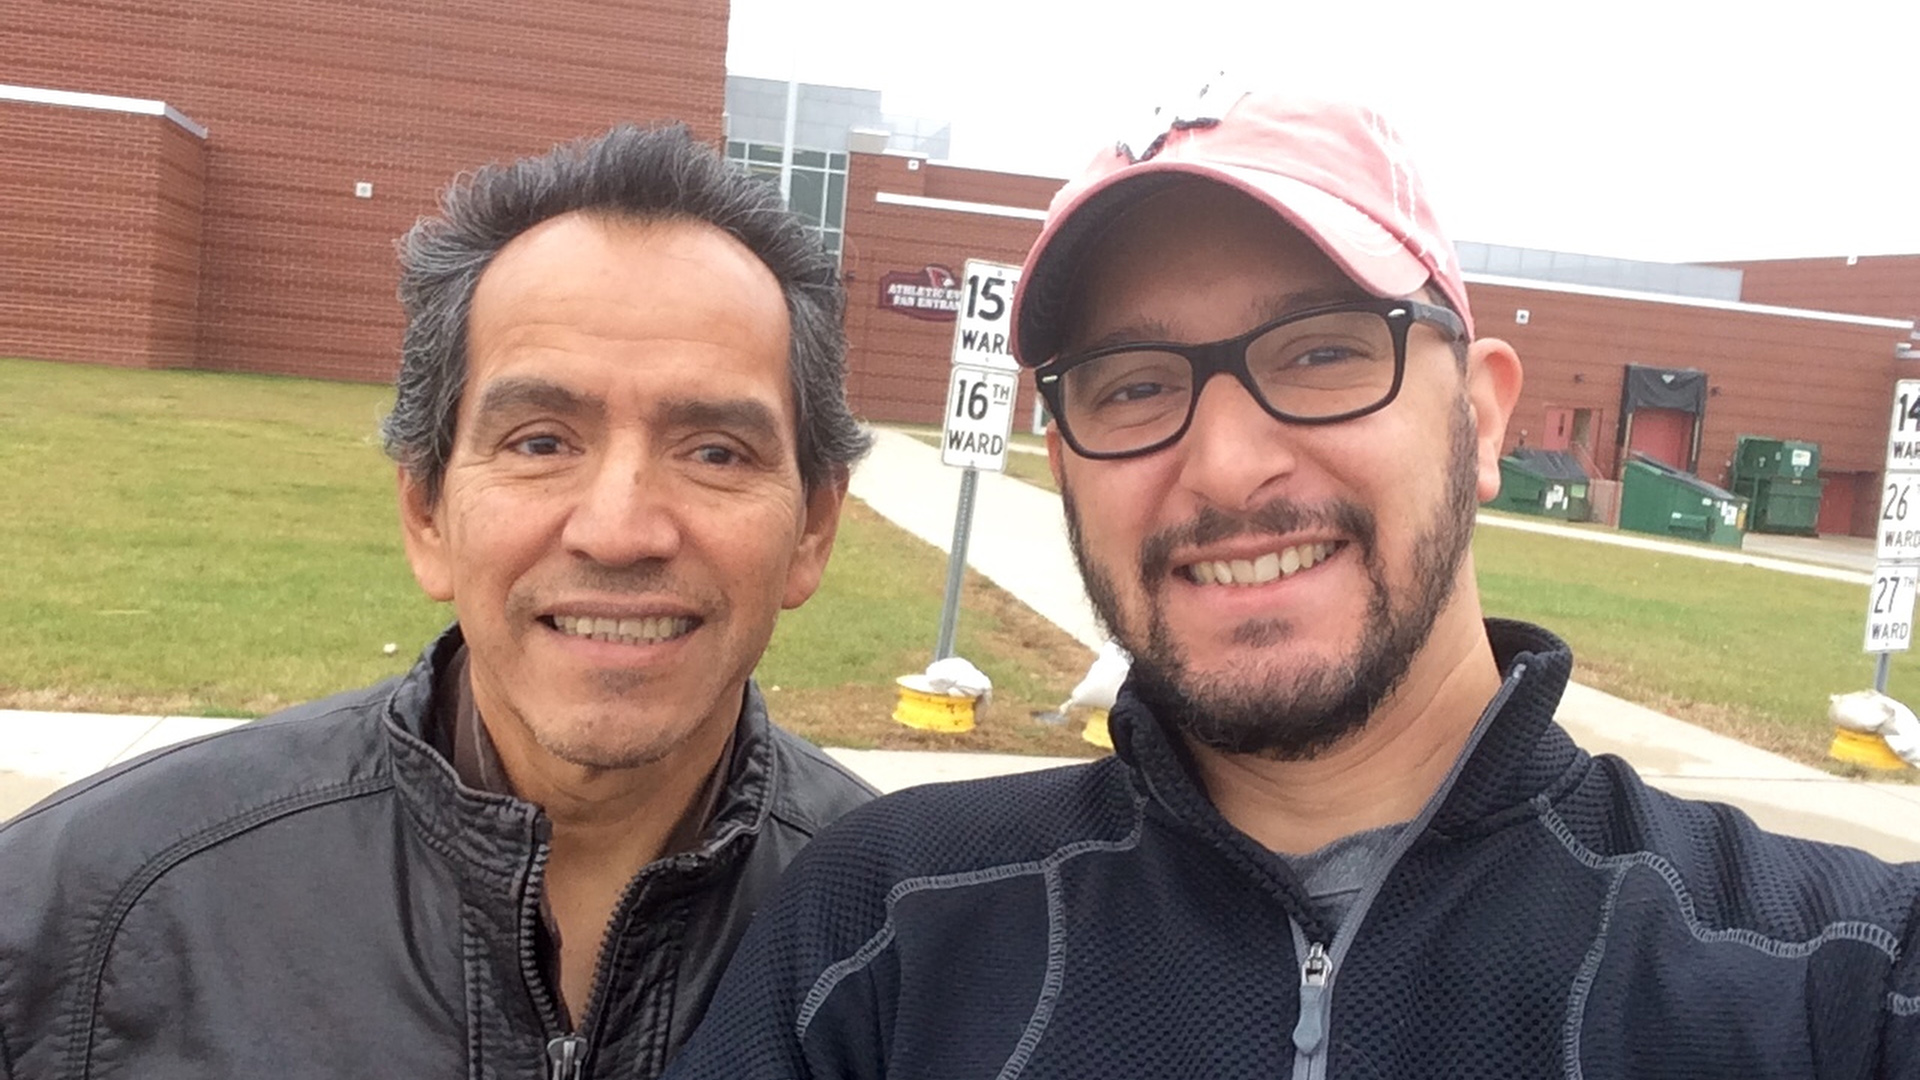 Carlos Muñoz Sr. and Carlos Muñoz Jr. stand in front of a school building.